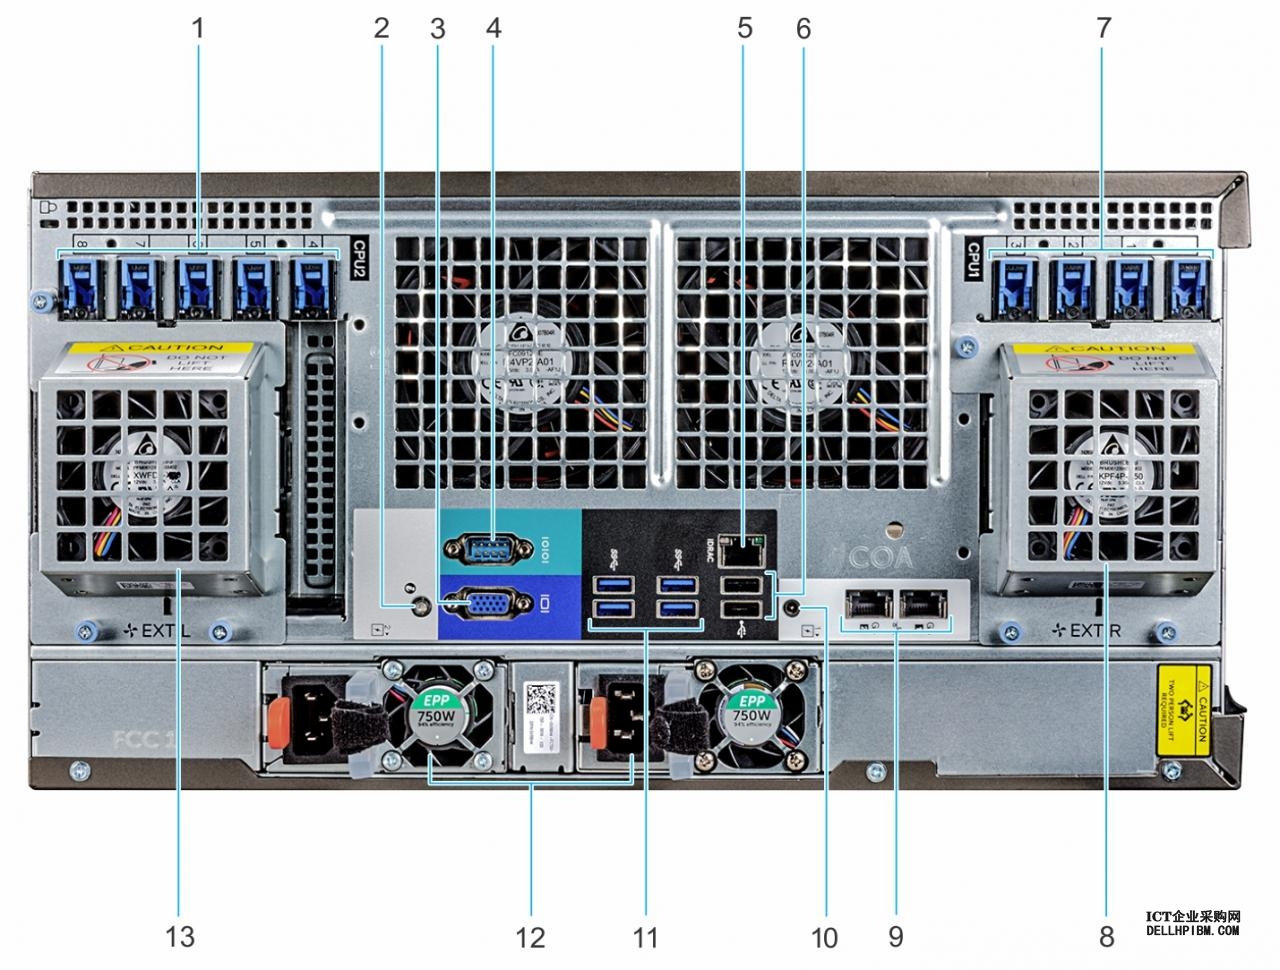 此图显示 T640 系统机架配置的背面视图